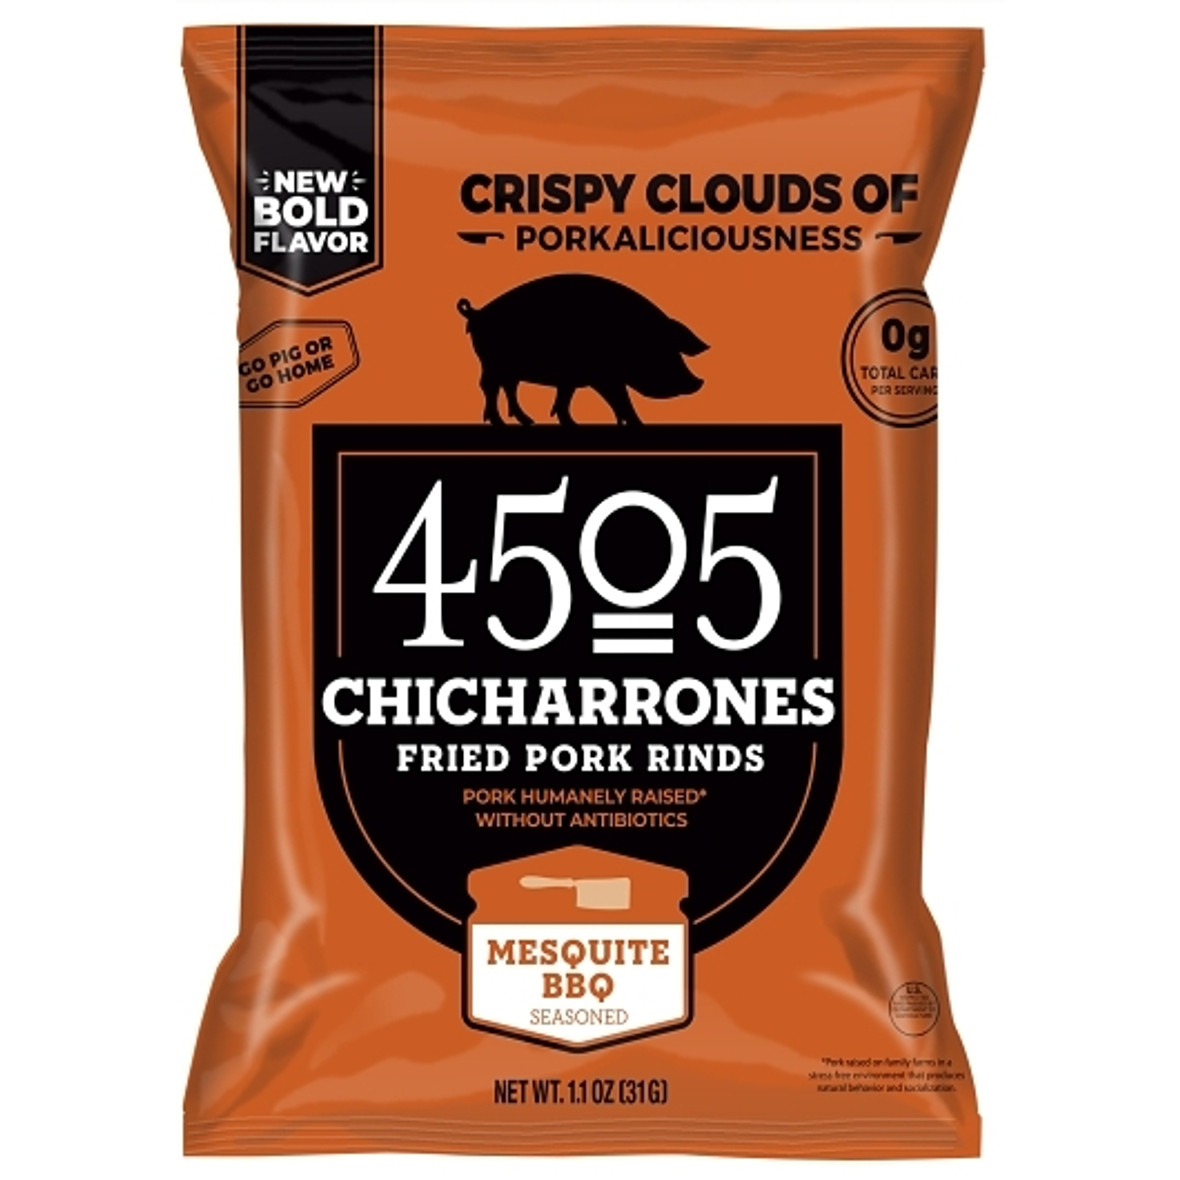 4505 Meats Bbq Seasoned Chicharro, 1.1 Ounce, 12 Per Case